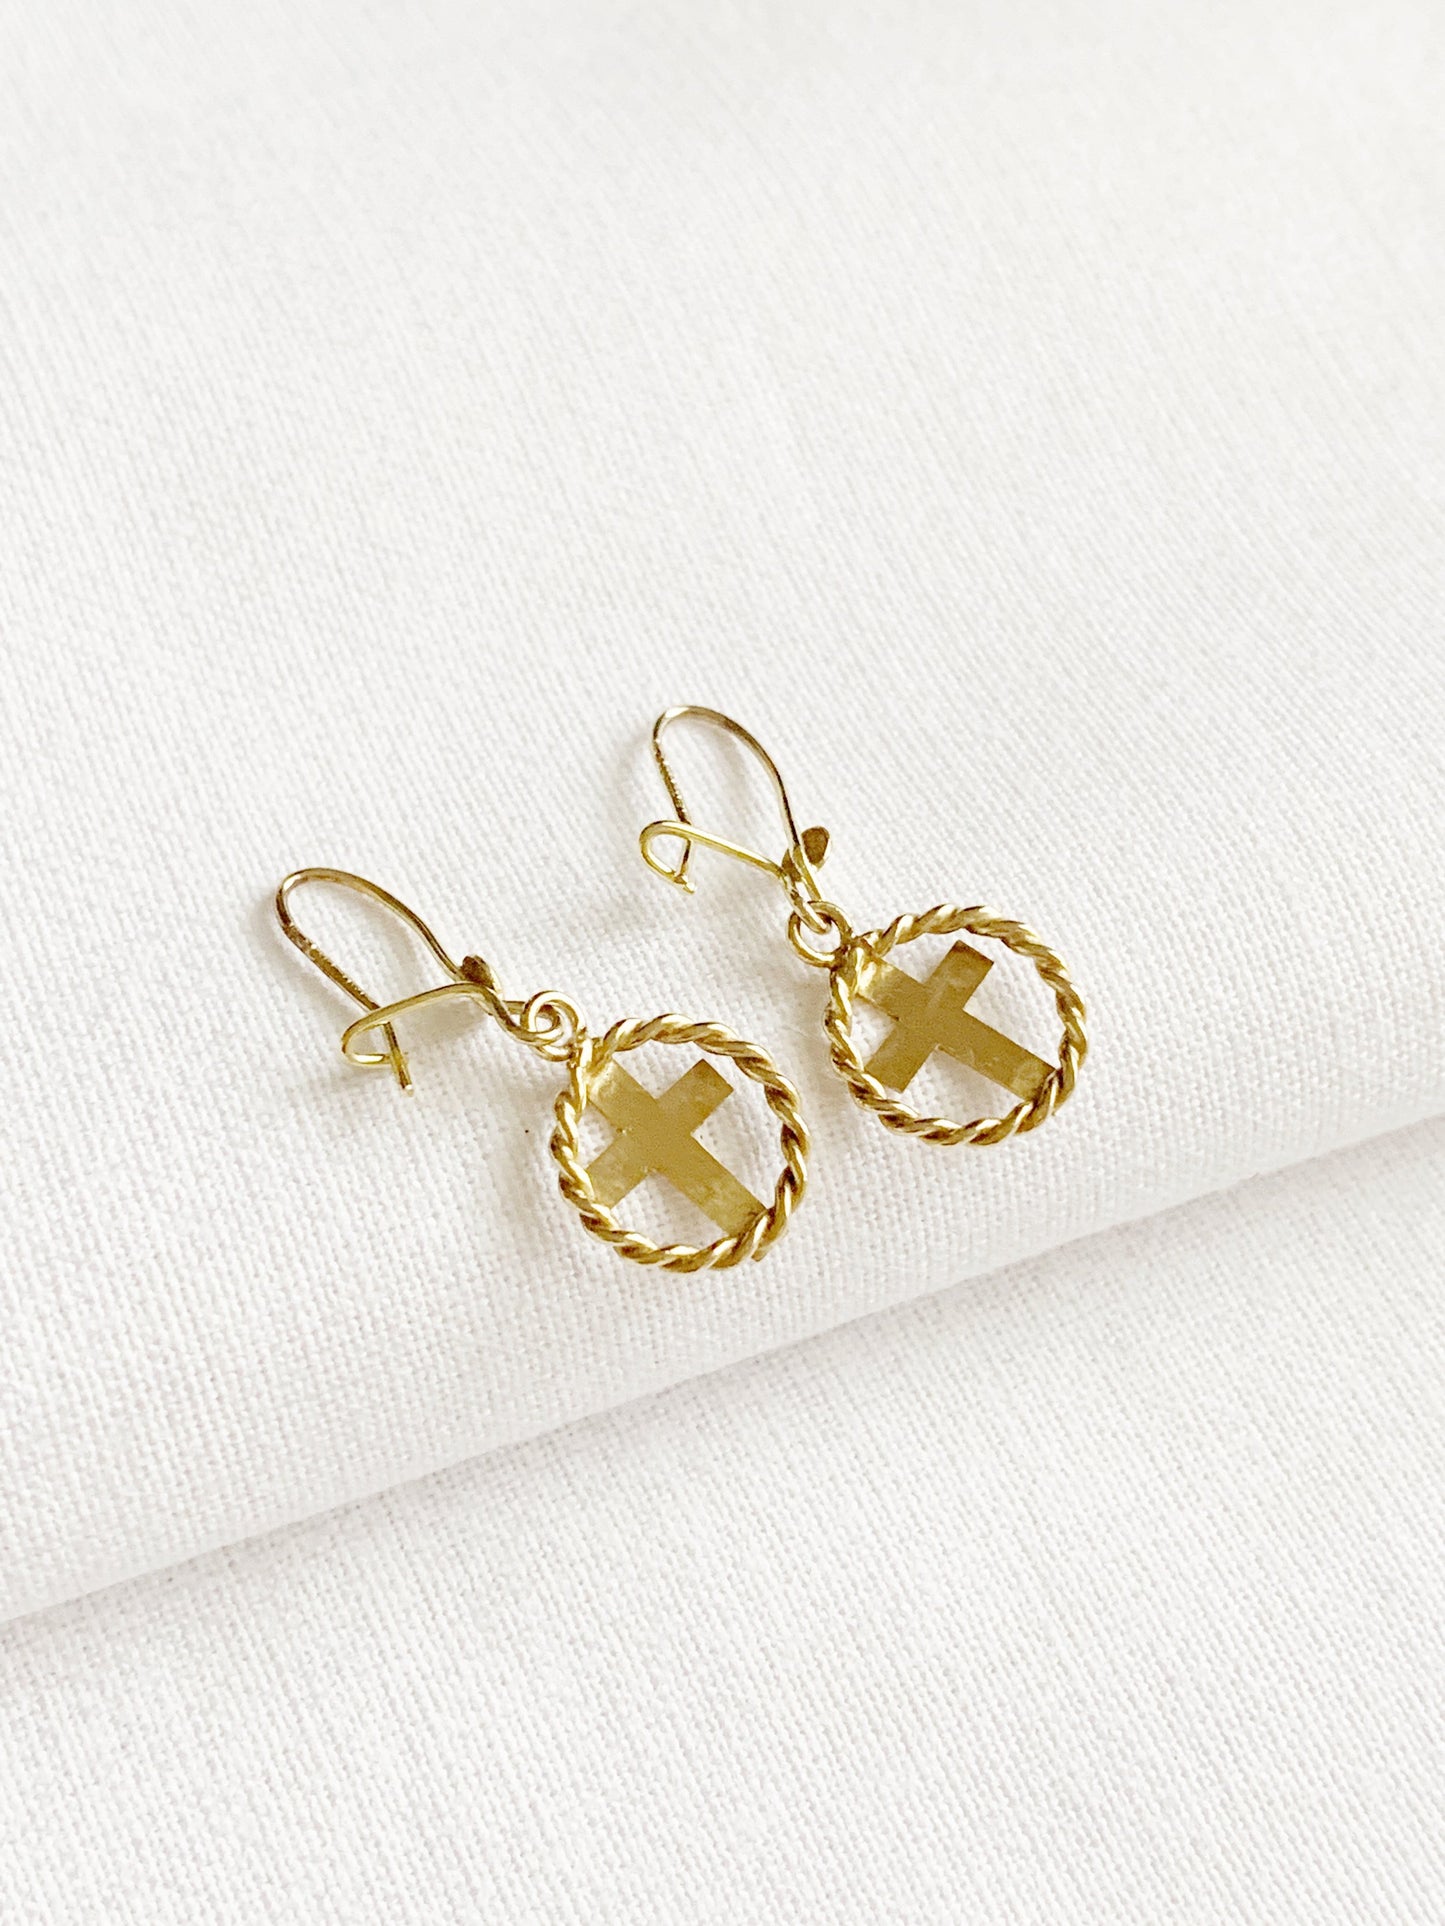 Vintage 9ct Gold Twist Cross Dangle Earrings